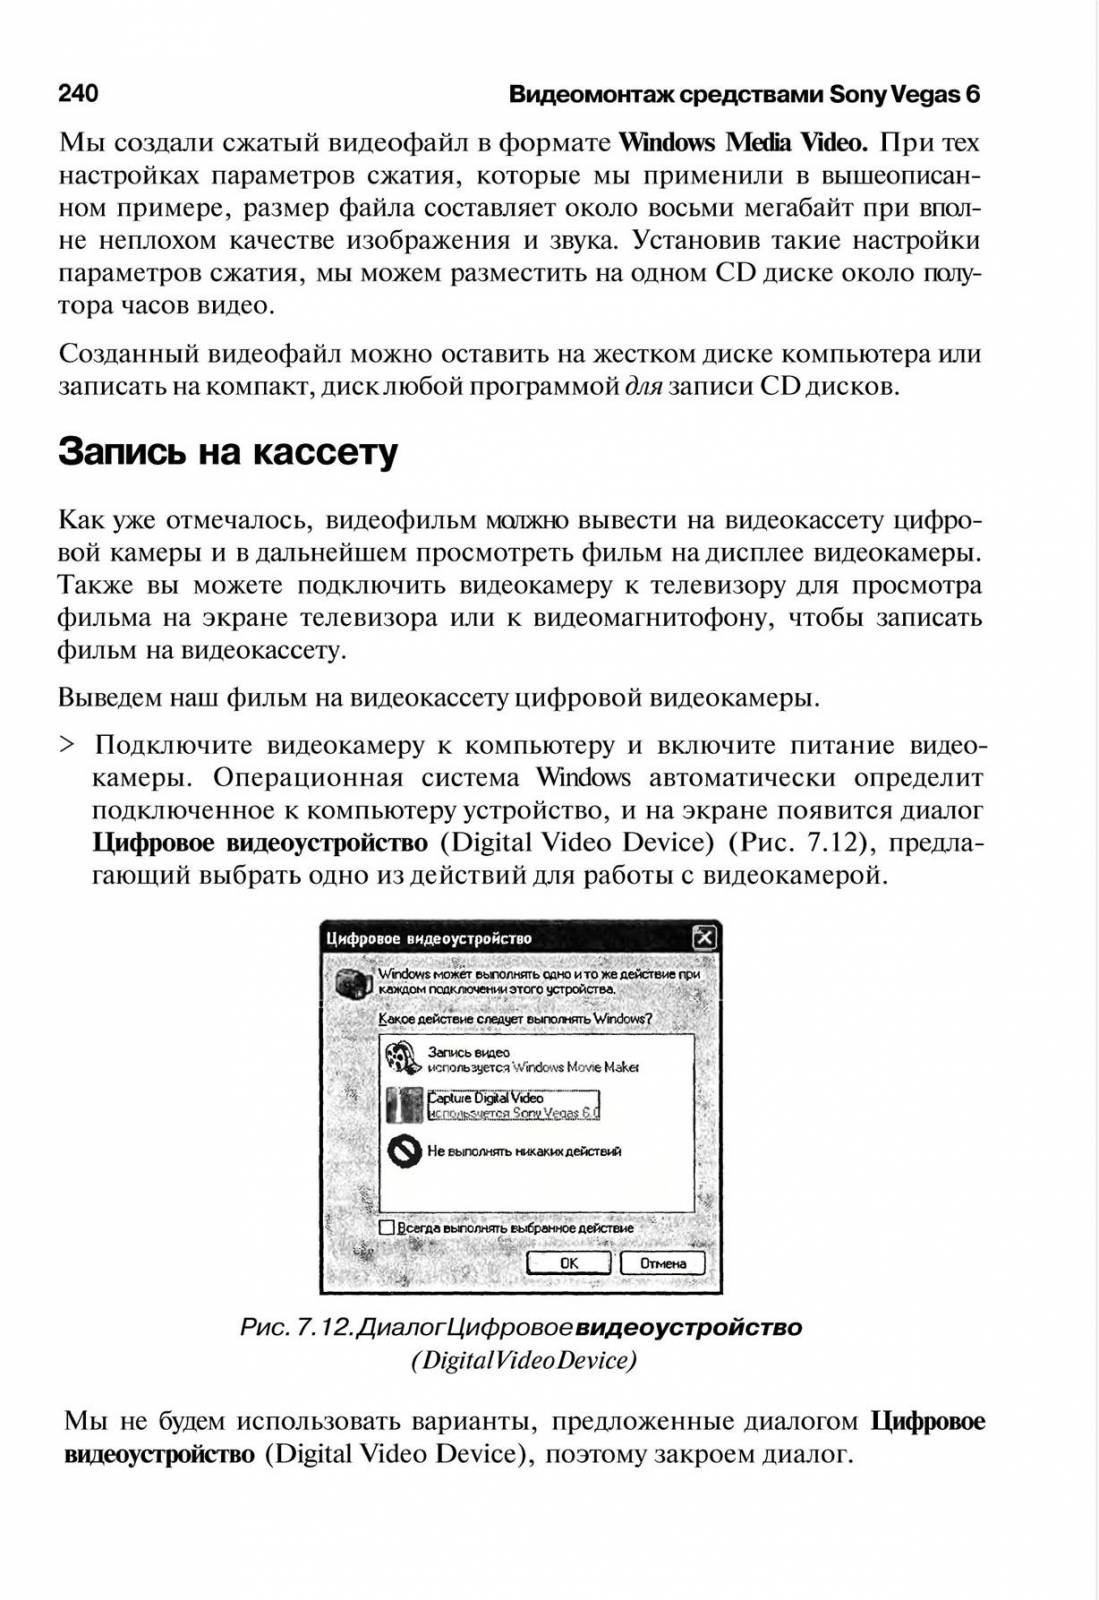 http://redaktori-uroki.3dn.ru/_ph/14/128072962.jpg